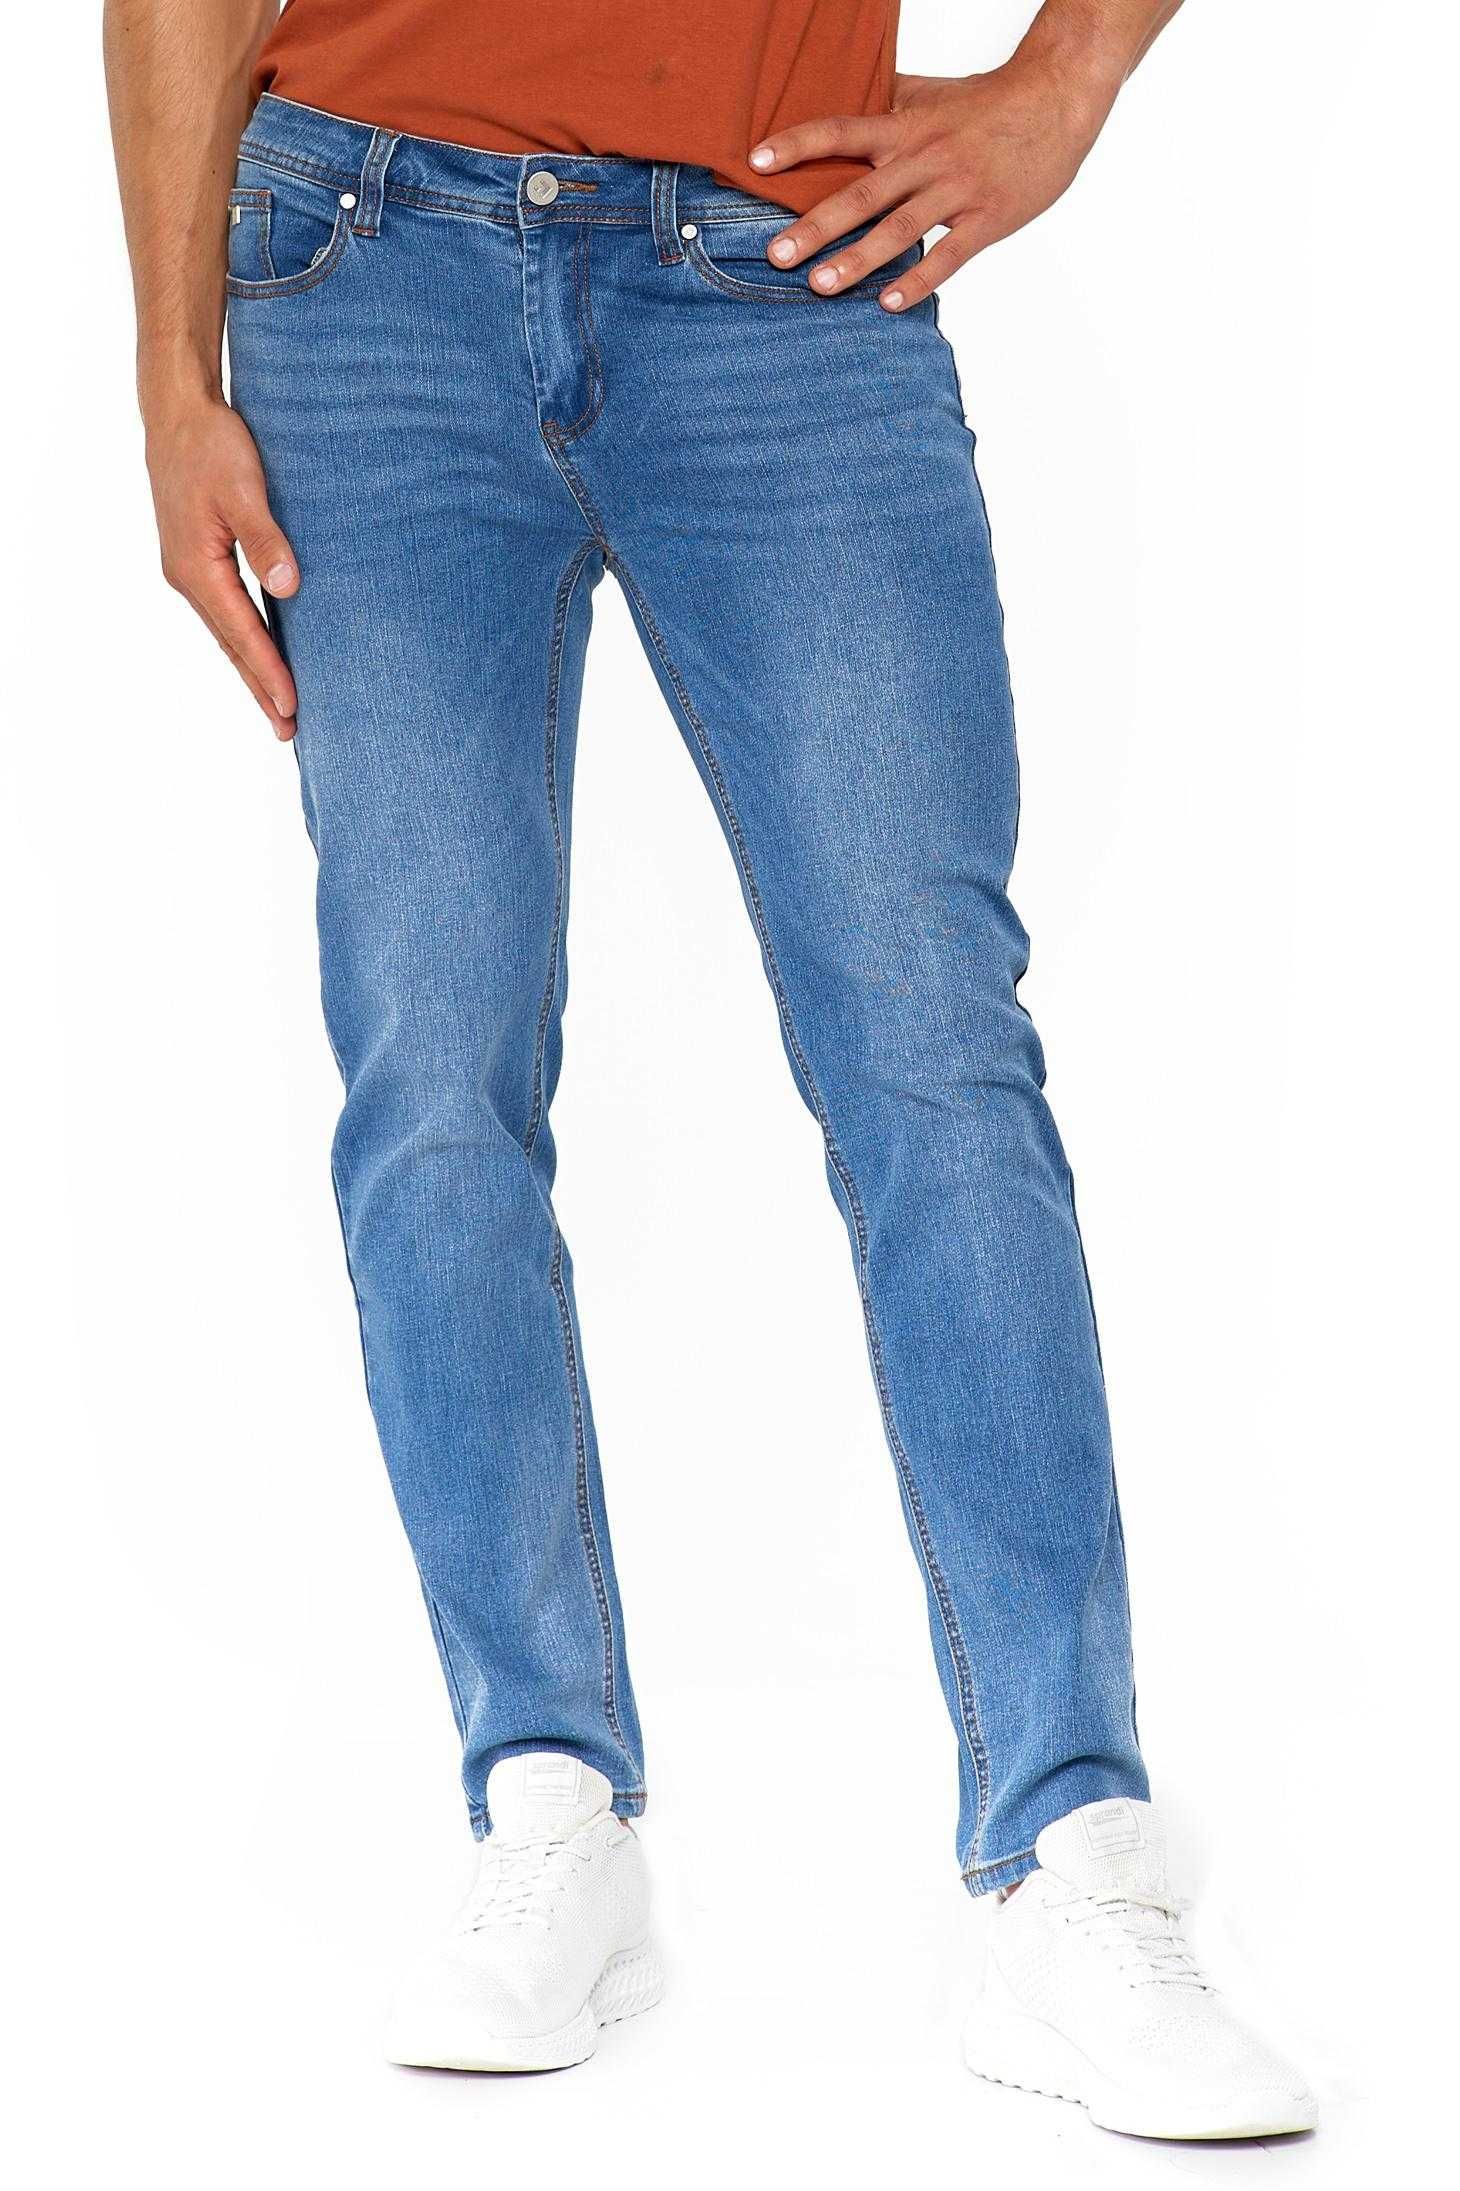 moraj spodnie męskie jeansowe niebieskie r.31